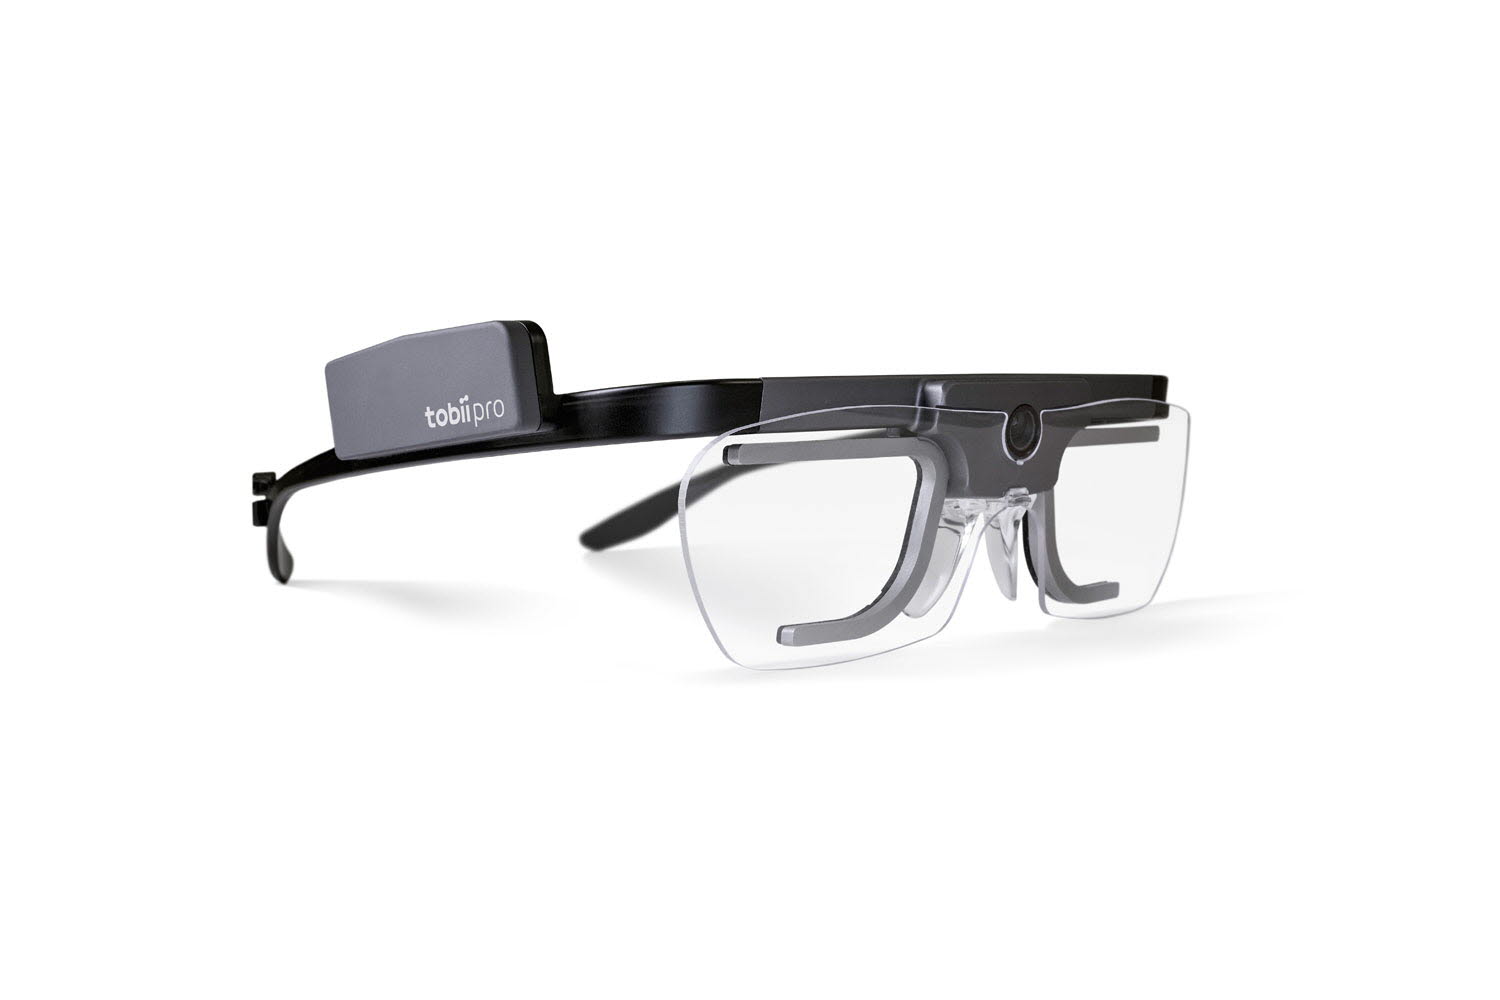 Tobii Pro Glasses 2 Eye Tracker